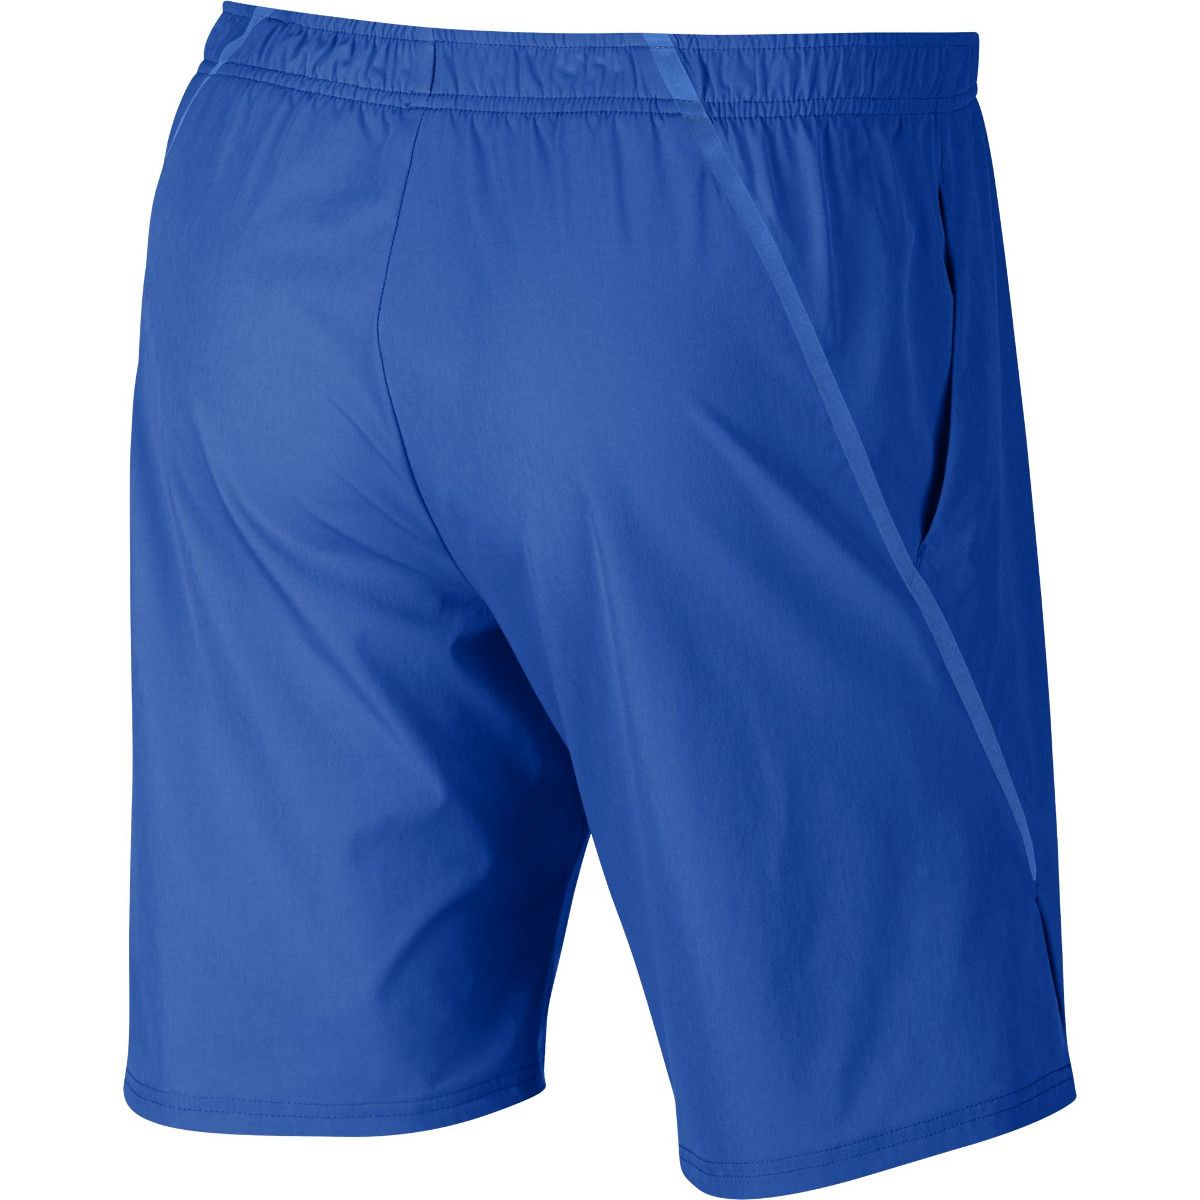 NikeCourt Flex Ace 9 Men's Tennis Shorts 887515-403